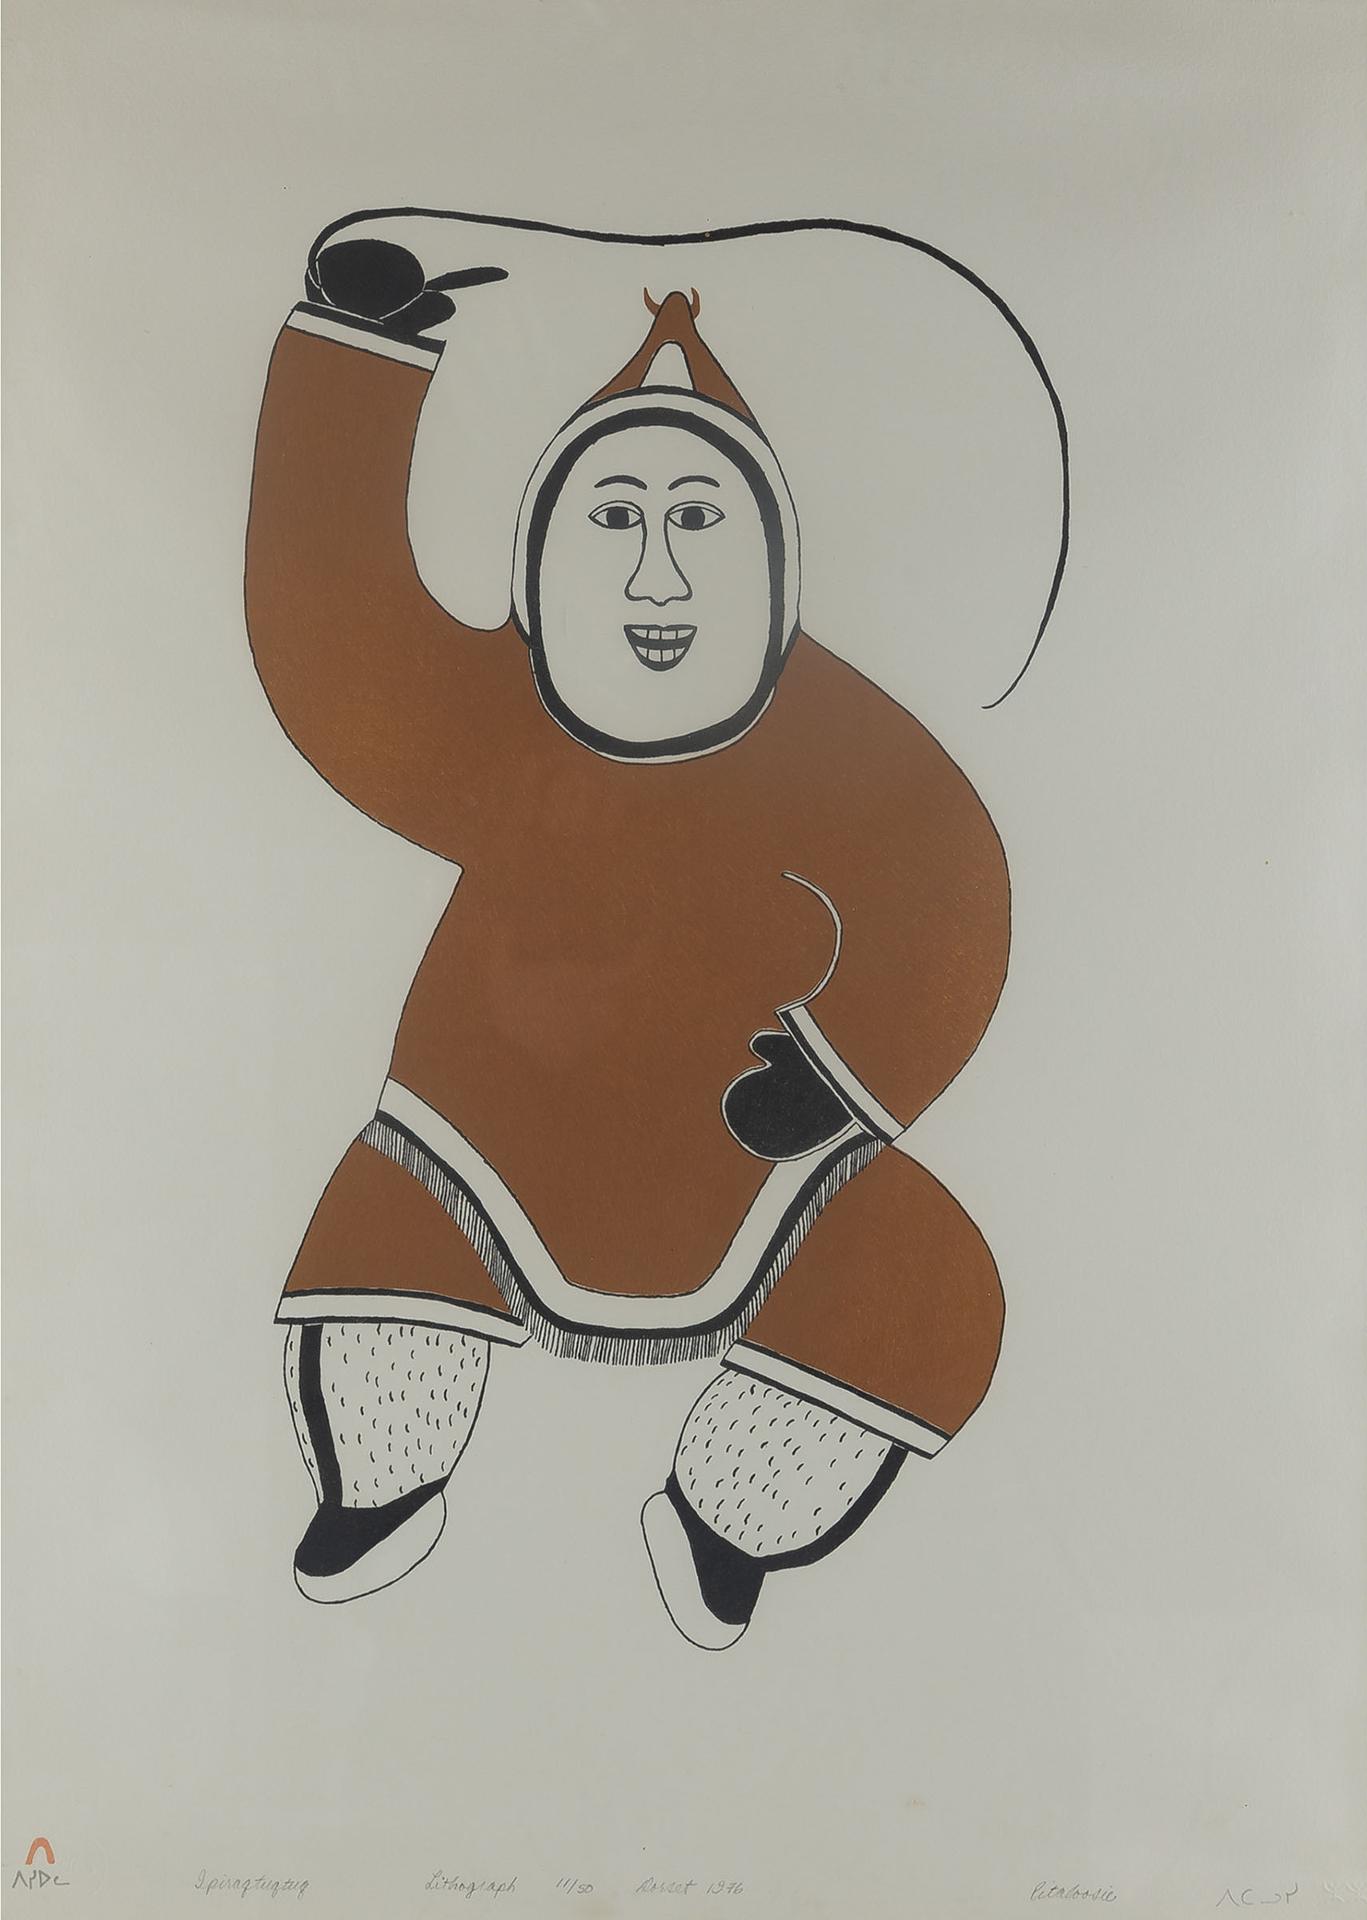 Pitaloosie Saila (1942-2021) - Ipiraqtuqtuq, 1976